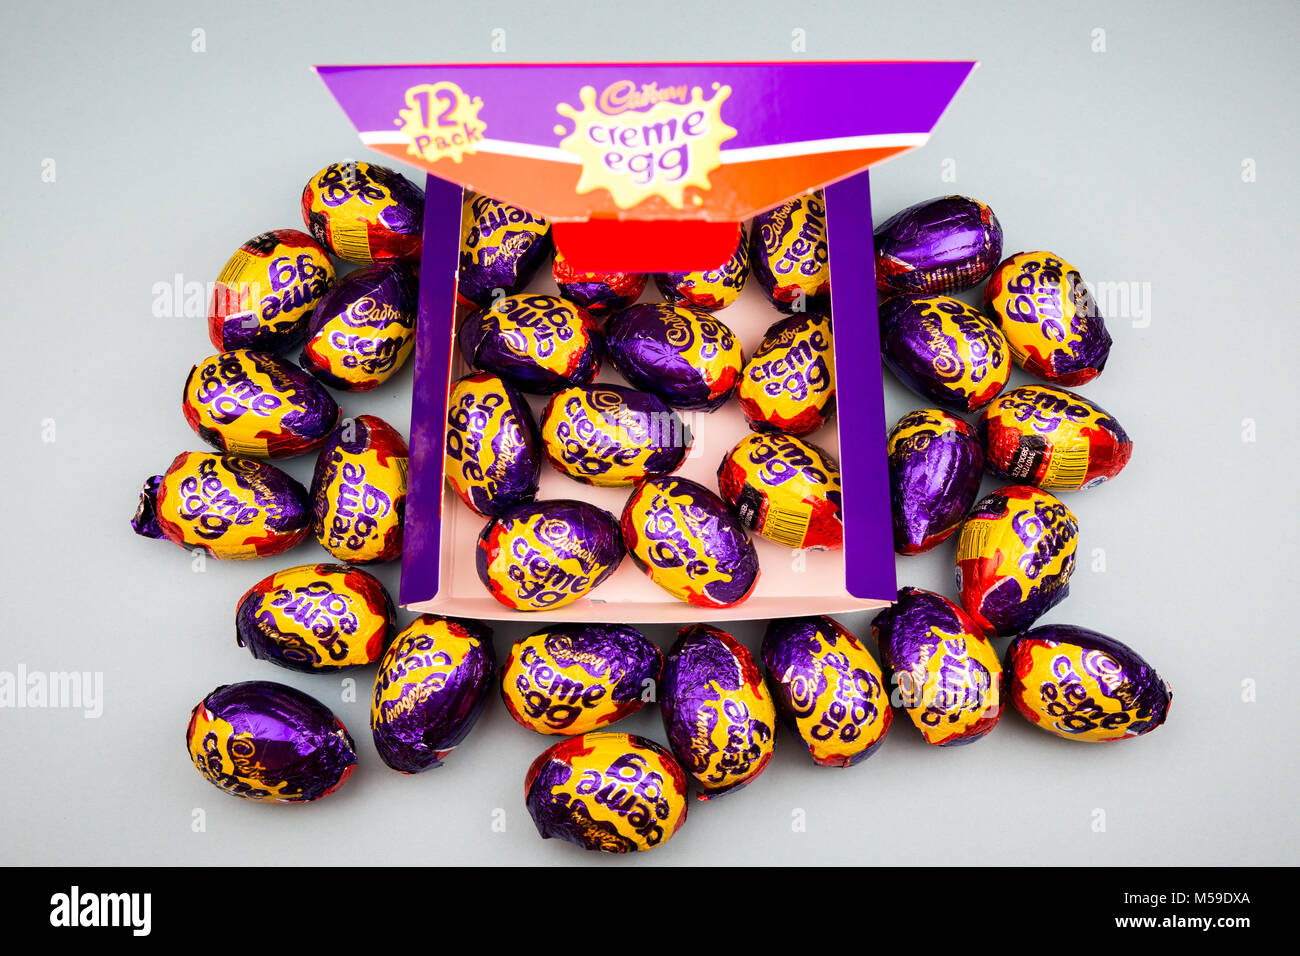 Beaucoup d'œufs Cadbury creme Banque D'Images